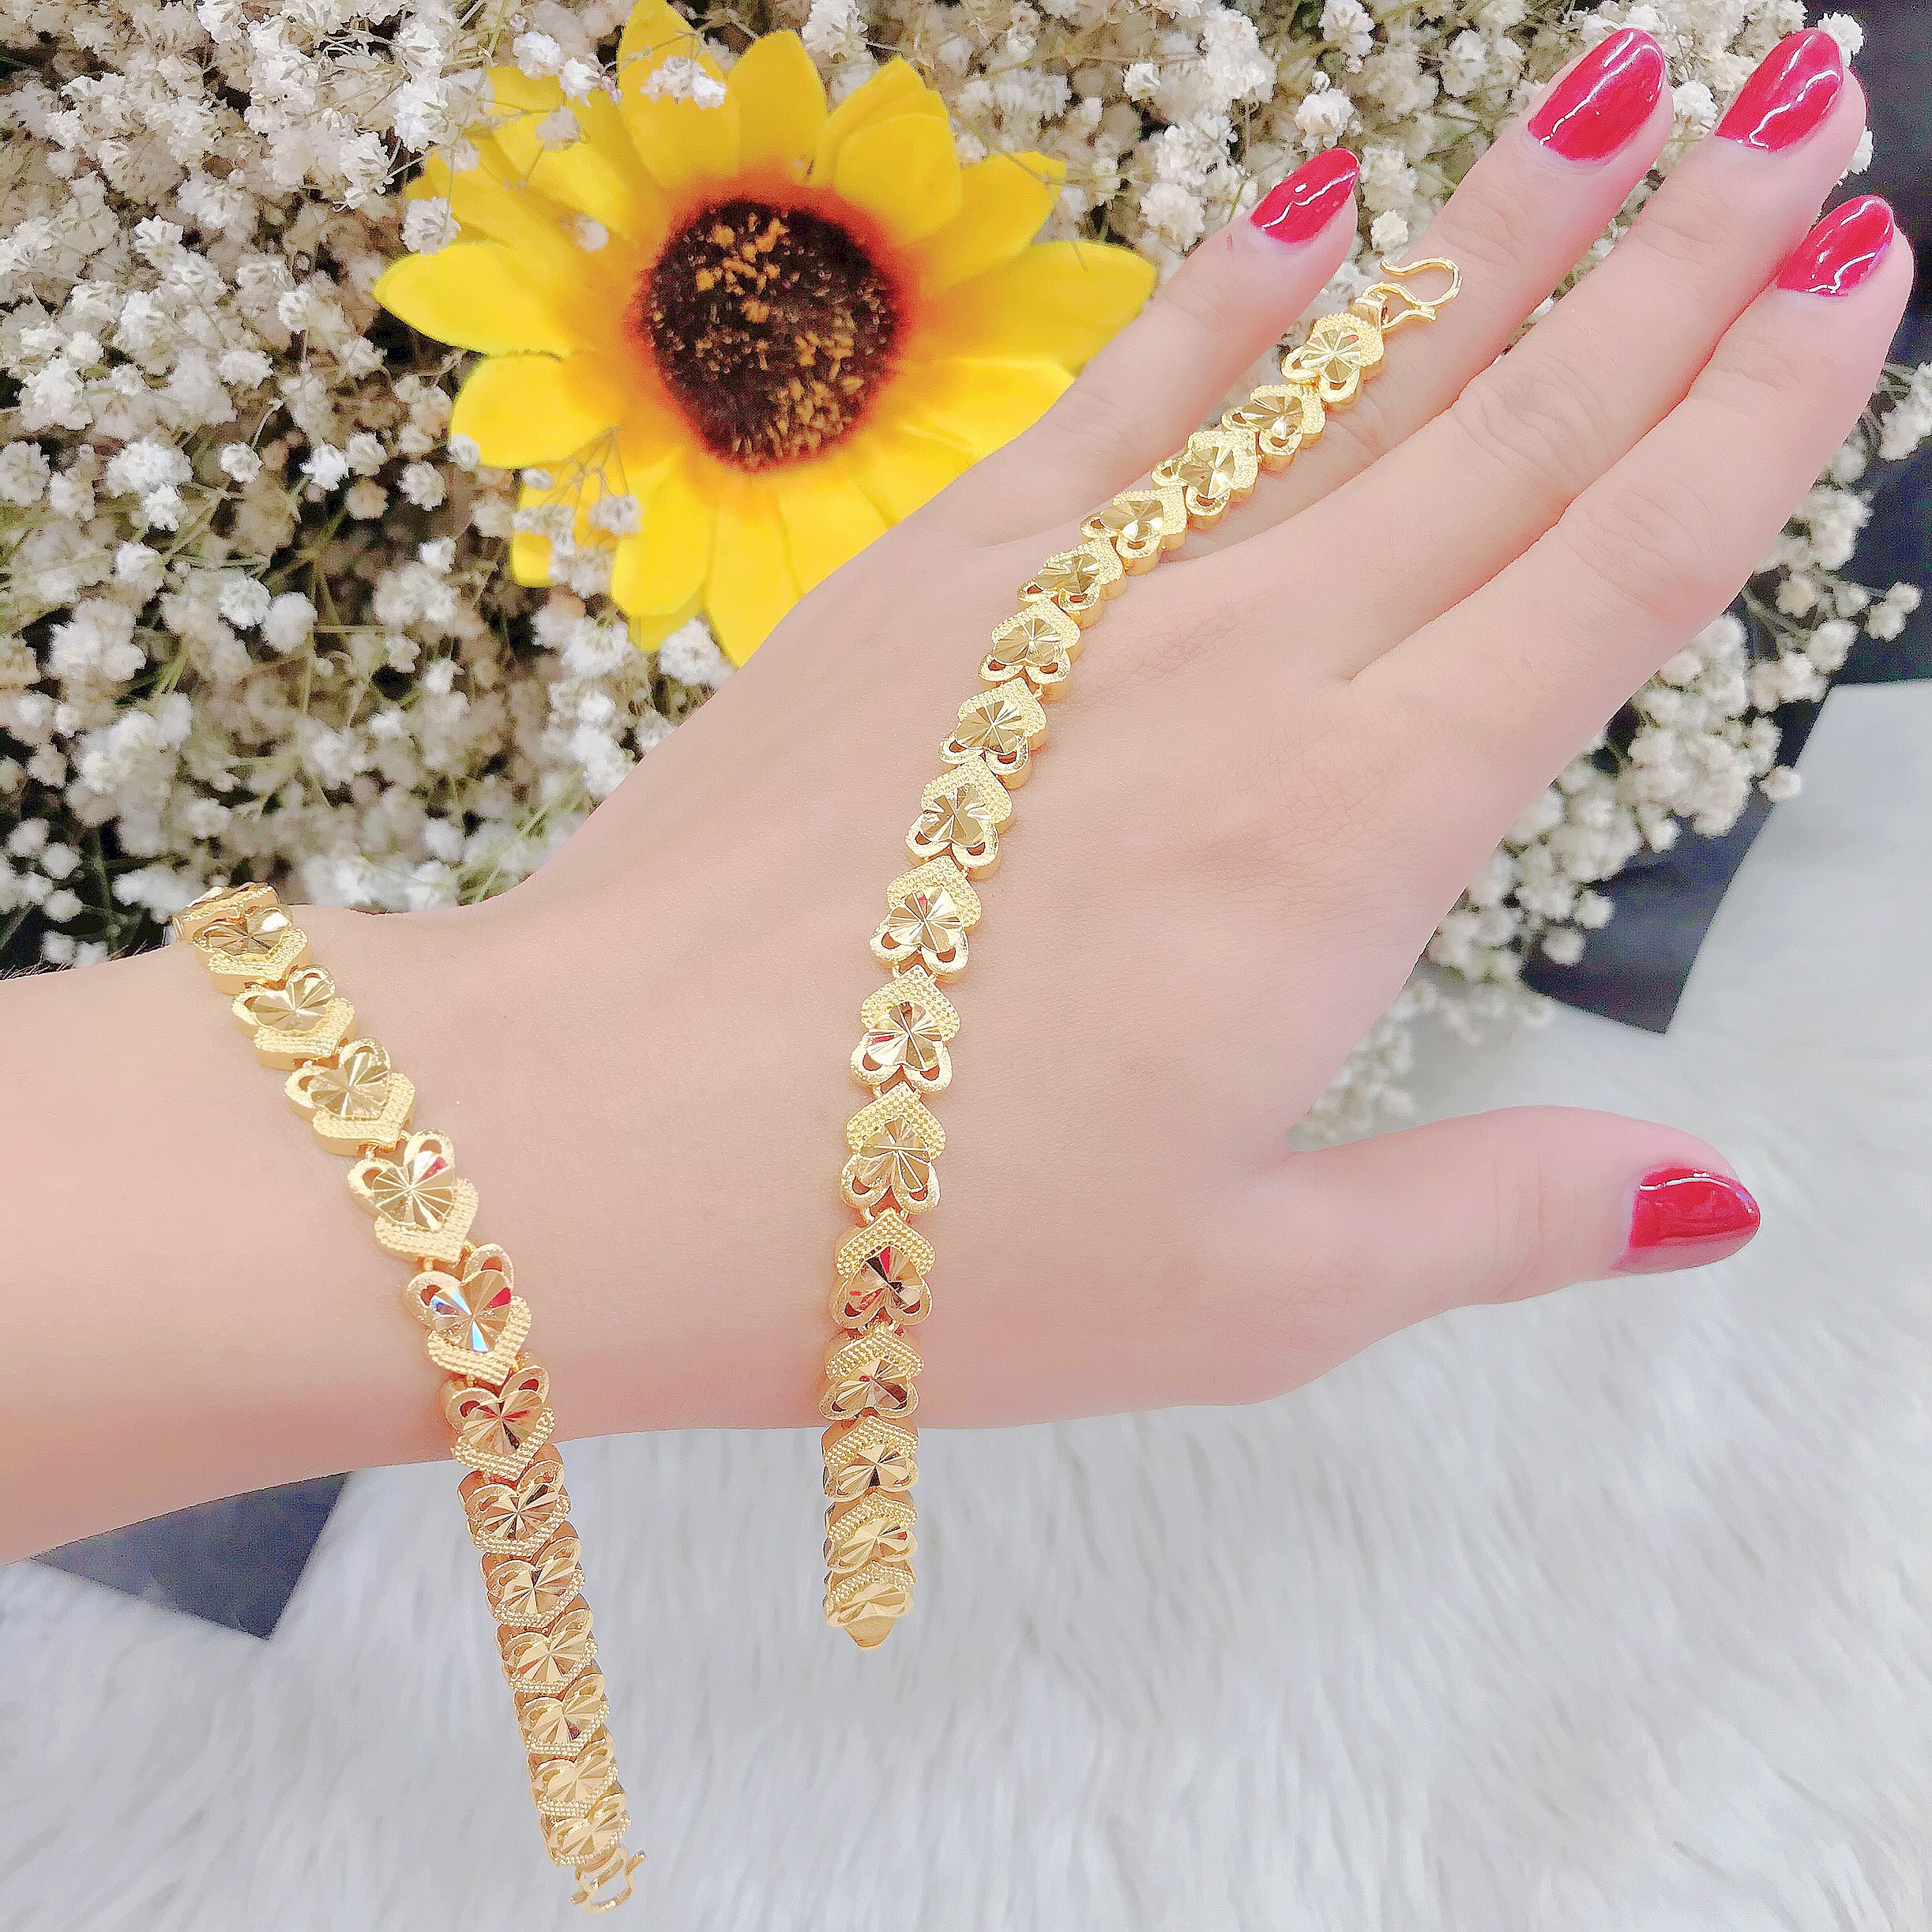 Sở hữu ngay chiếc vòng tay nữ mạ vàng 18k mẫu 058.0505 giá rẻ, bạn sẽ có một món trang sức đẹp và độc đáo để làm mới phong cách của mình. Với thiết kế đơn giản nhưng tinh tế, vòng tay này thực sự là một lựa chọn hoàn hảo cho các tín đồ thời trang.